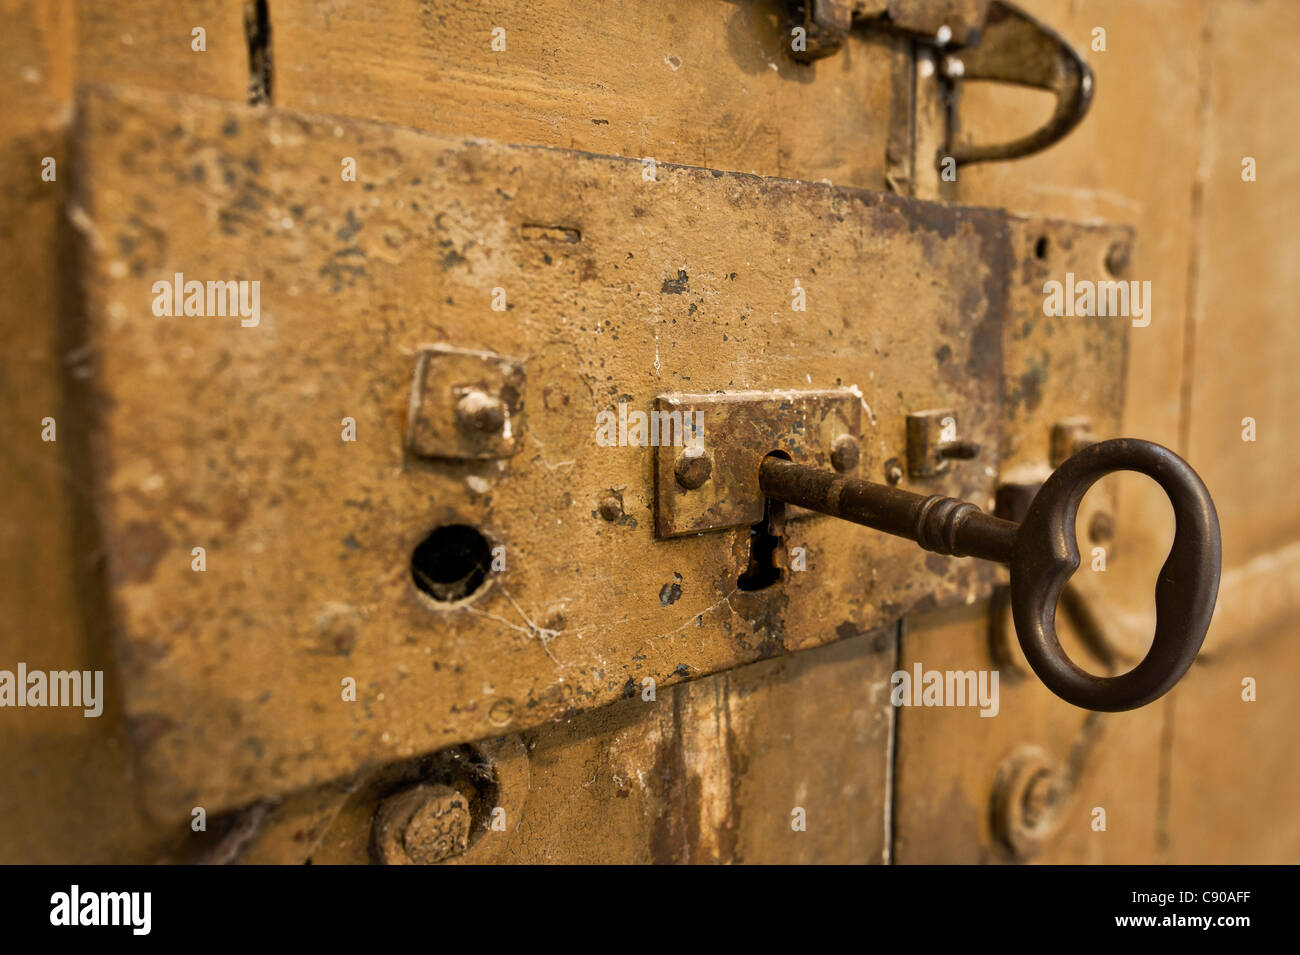 Old key in a door lock Stock Photo